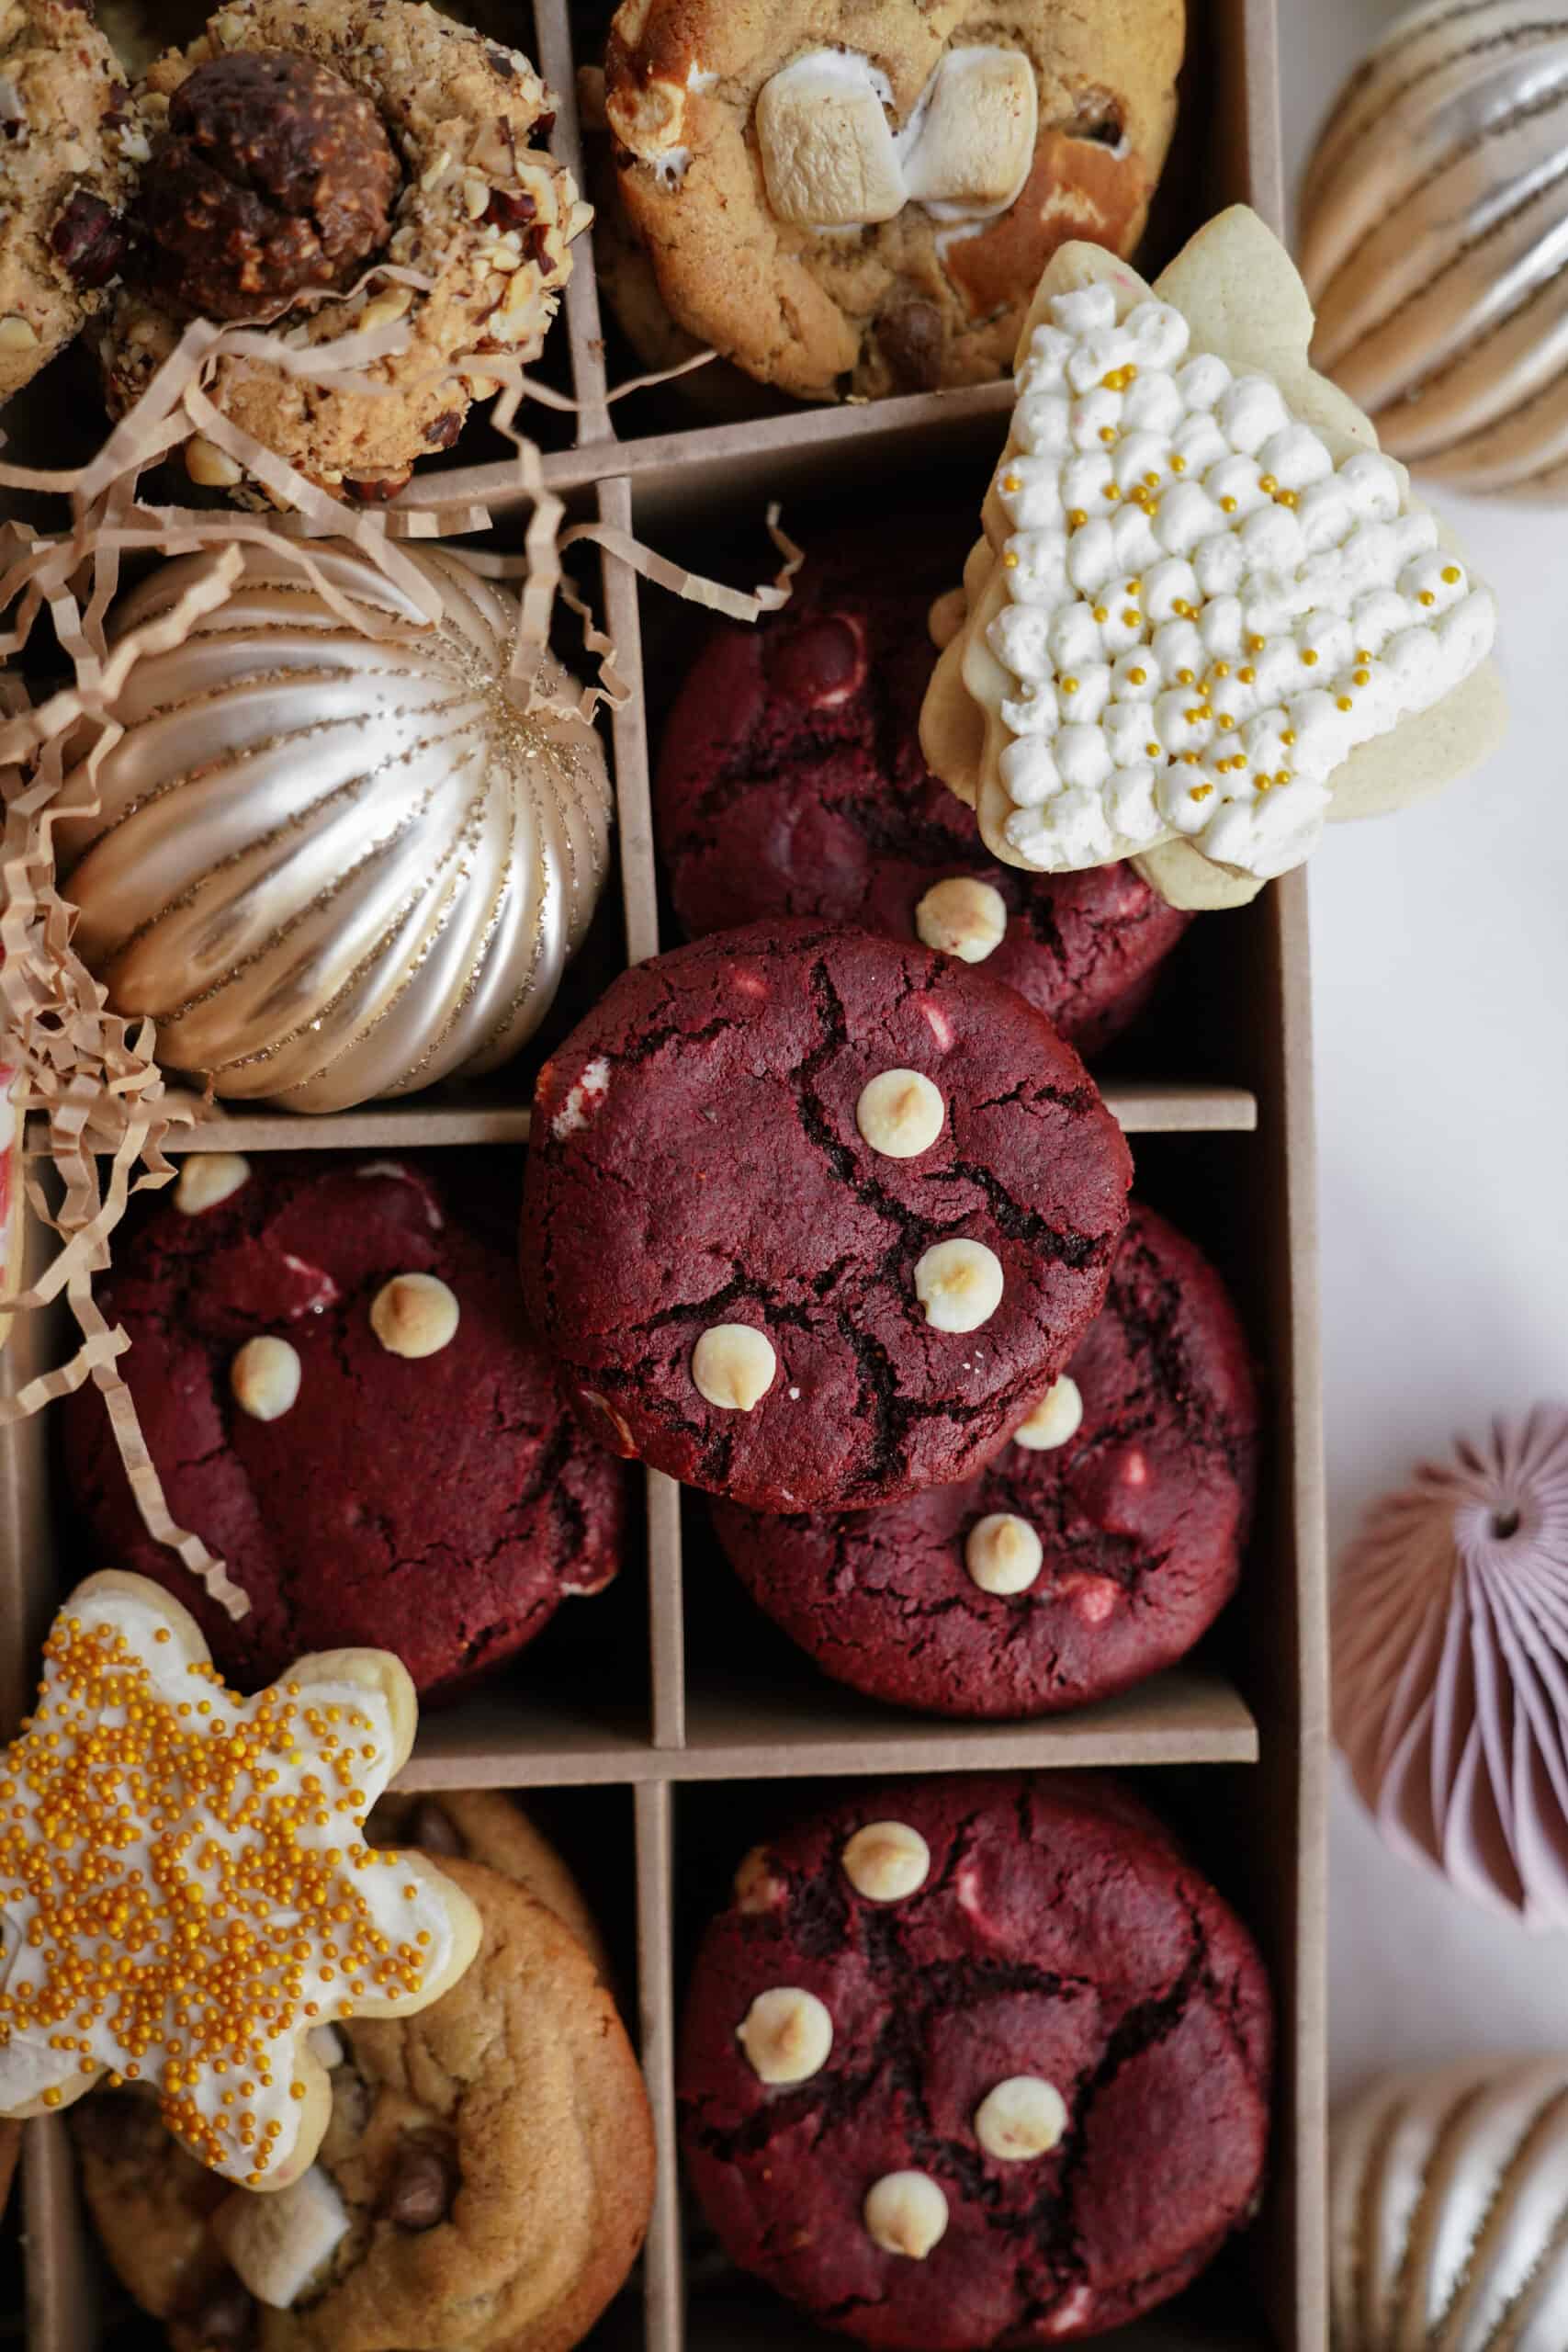 Red velvet cookies in a box of cookies